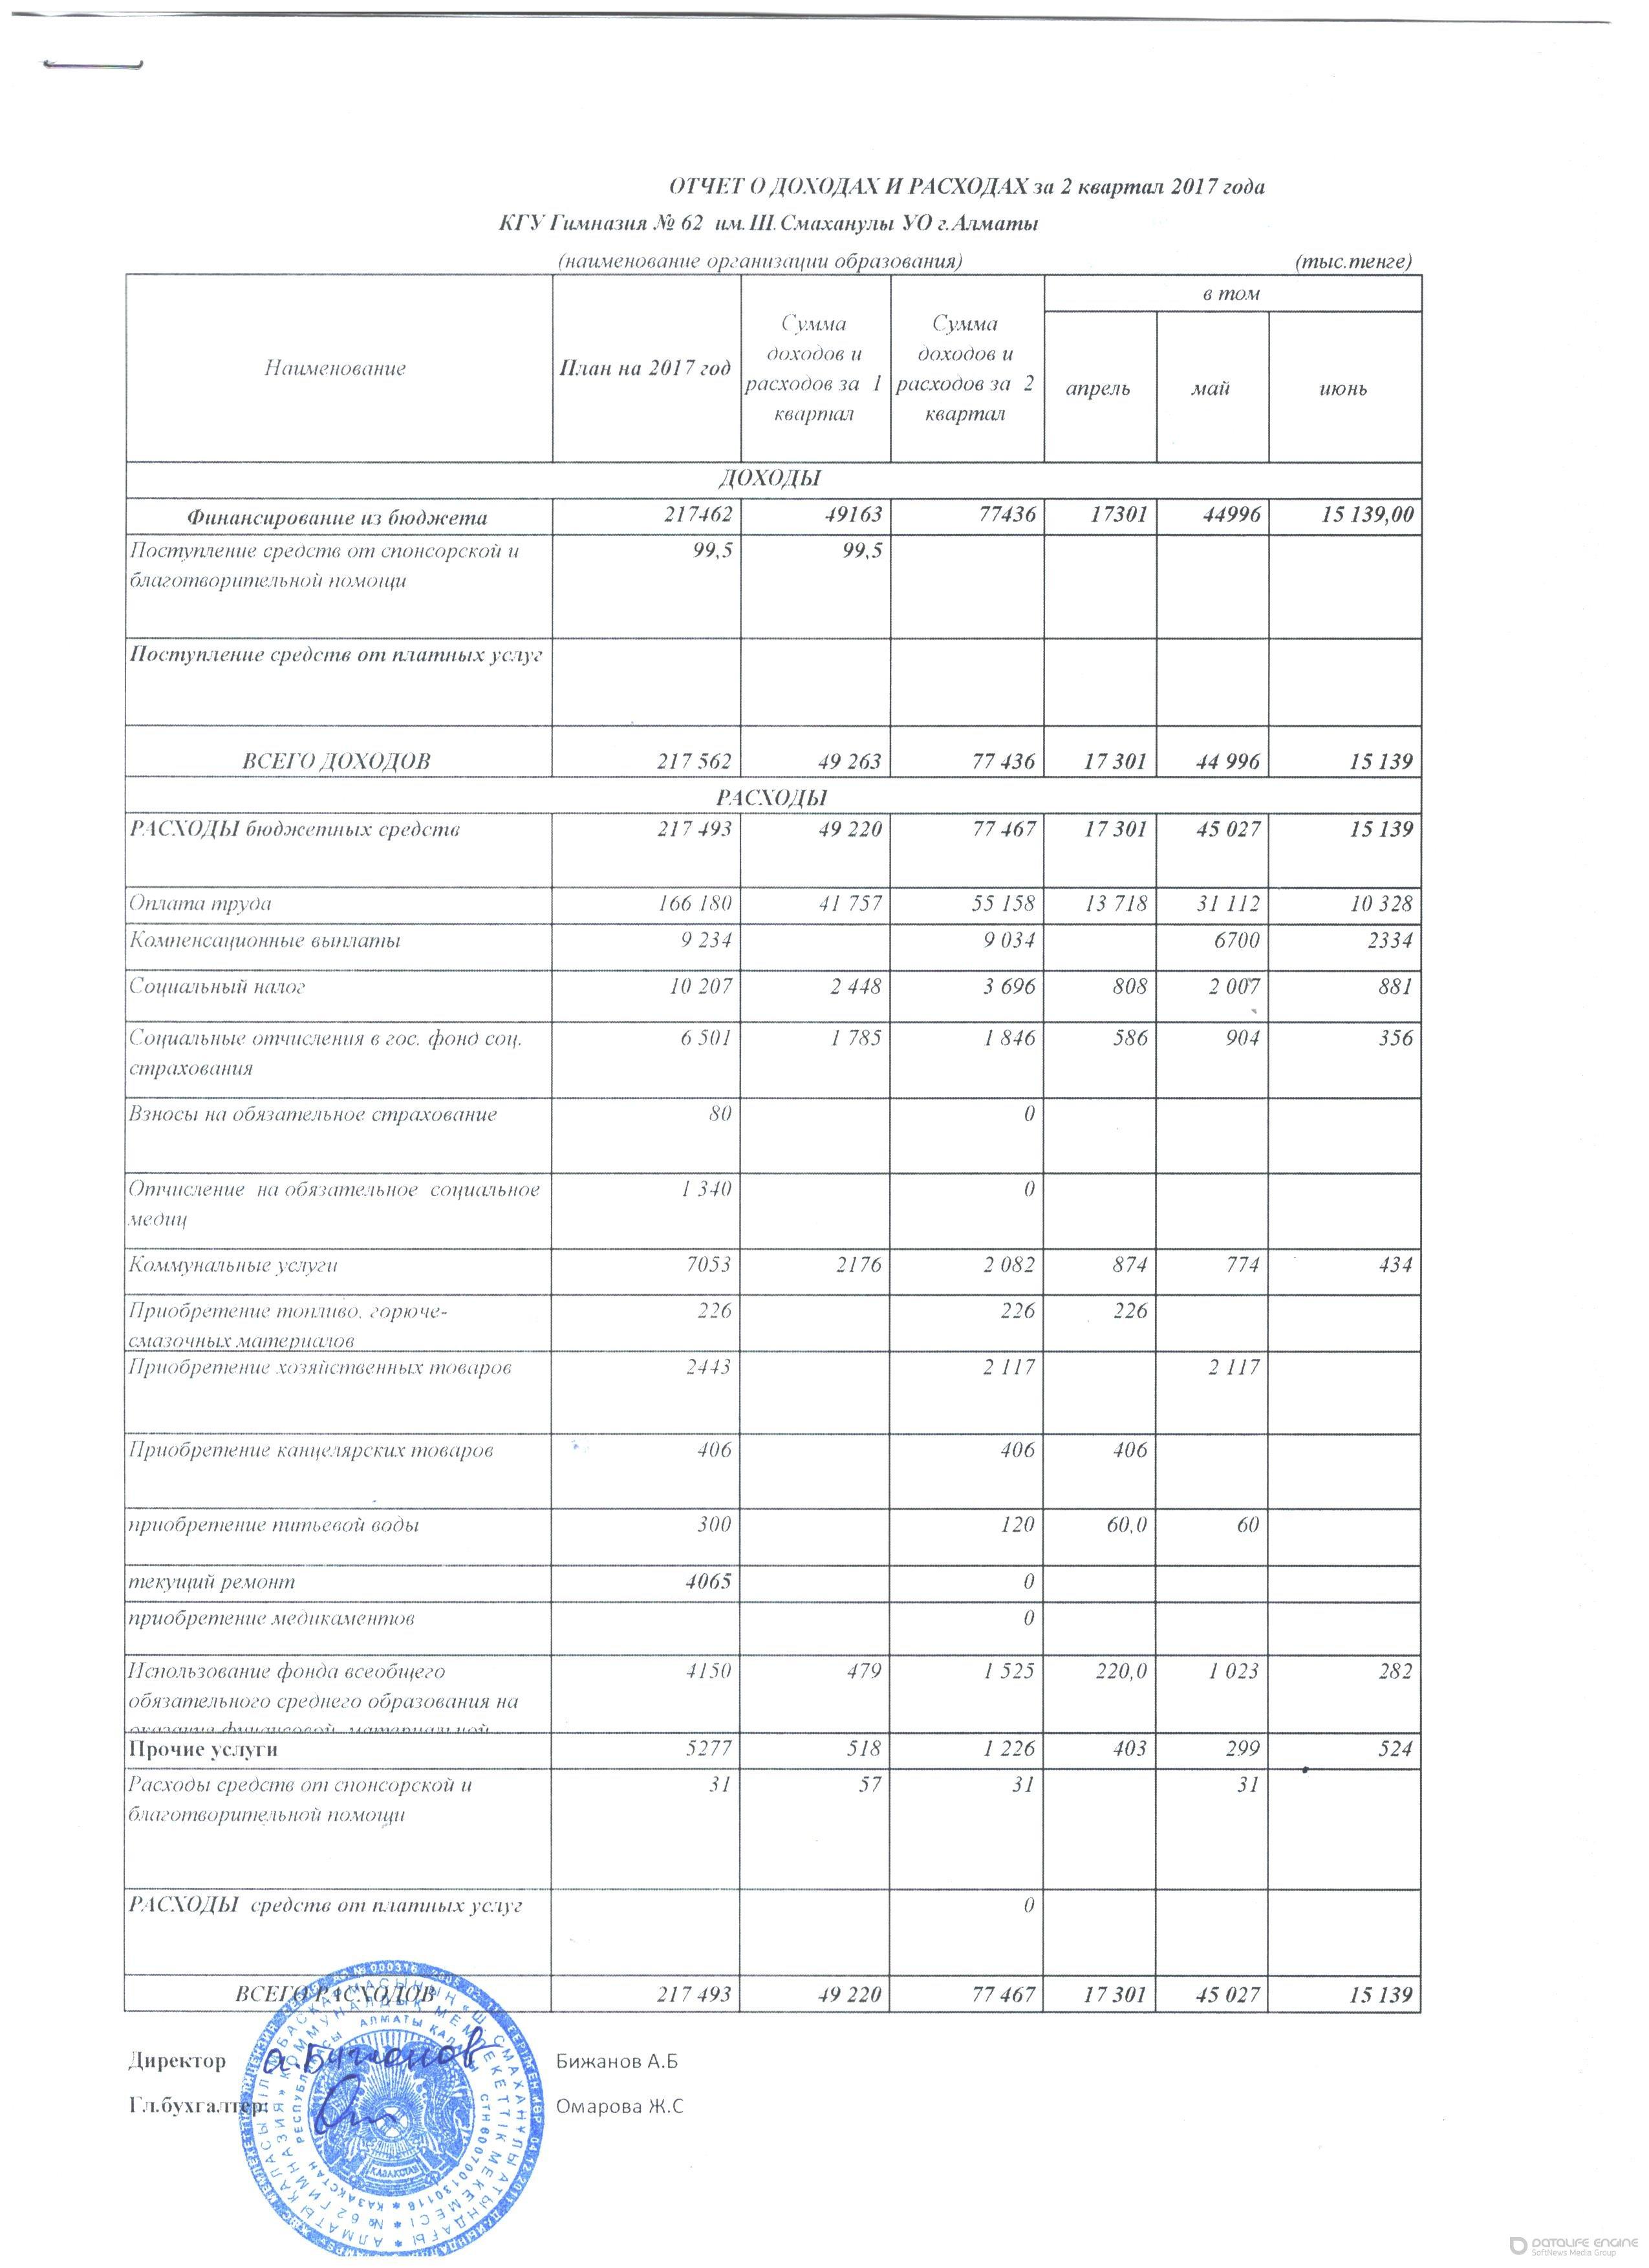 Отчет о доходах и расходах за 2-кв 2017г и пояснительная записка